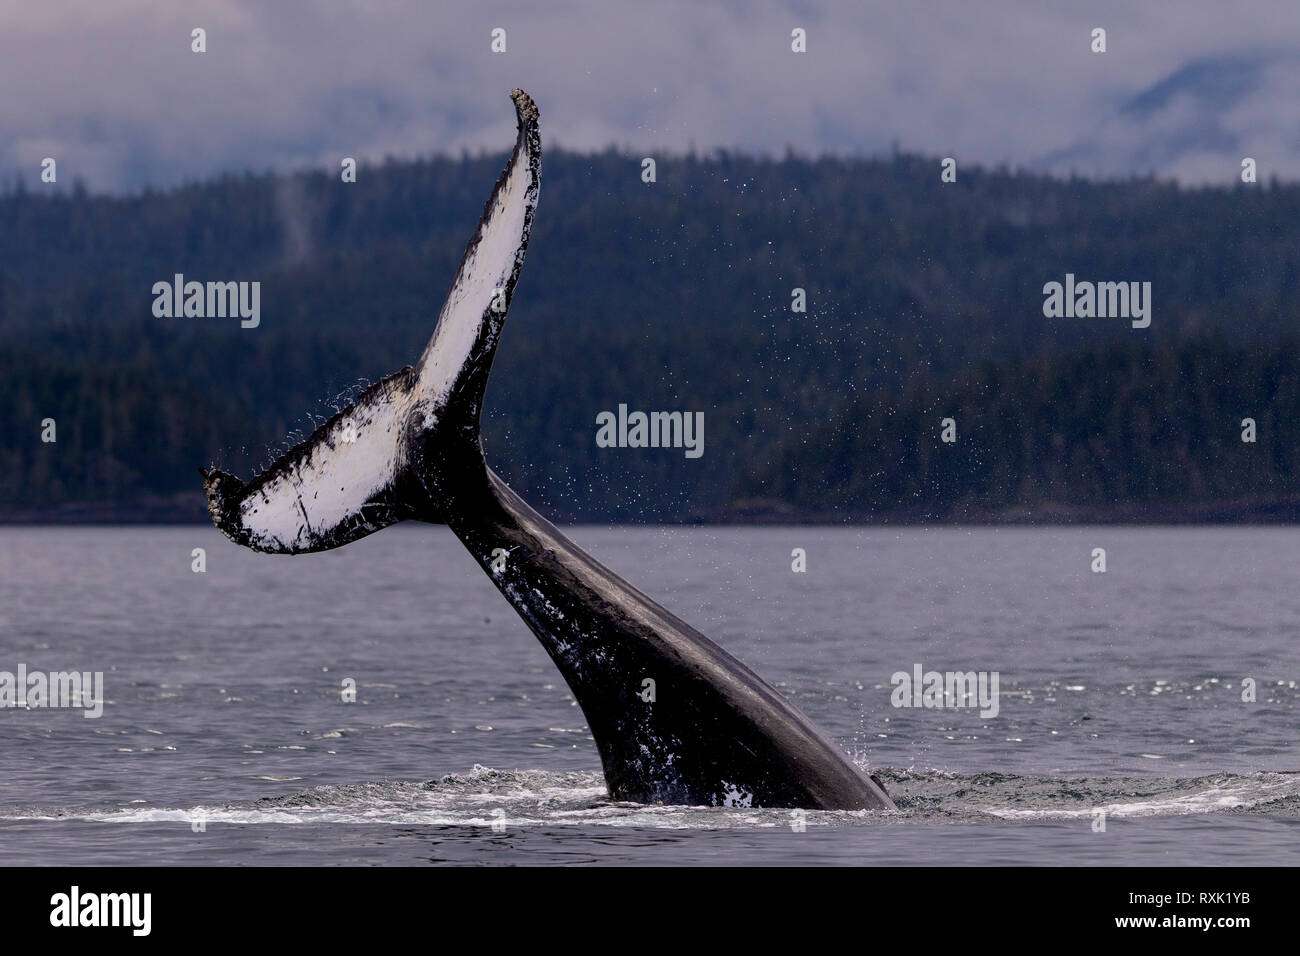 Cola de ballena jorobada bofetadas cerca del archipiélago Broughton, Great Bear Rainforest, Territorio de las Primeras Naciones, British Columbia, Canadá. Foto de stock